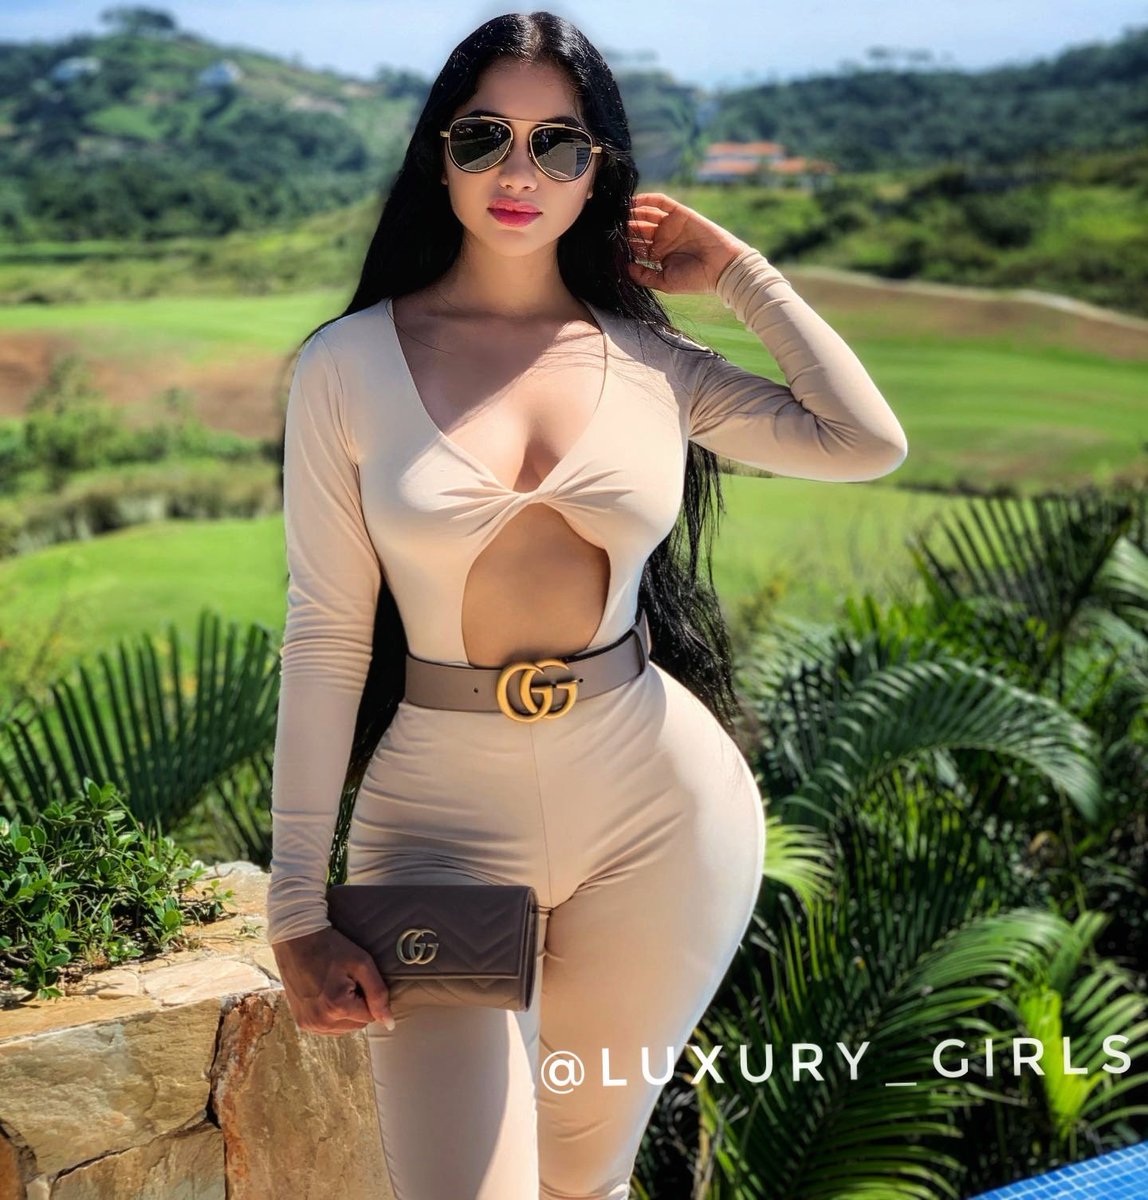 Www luxury girls com